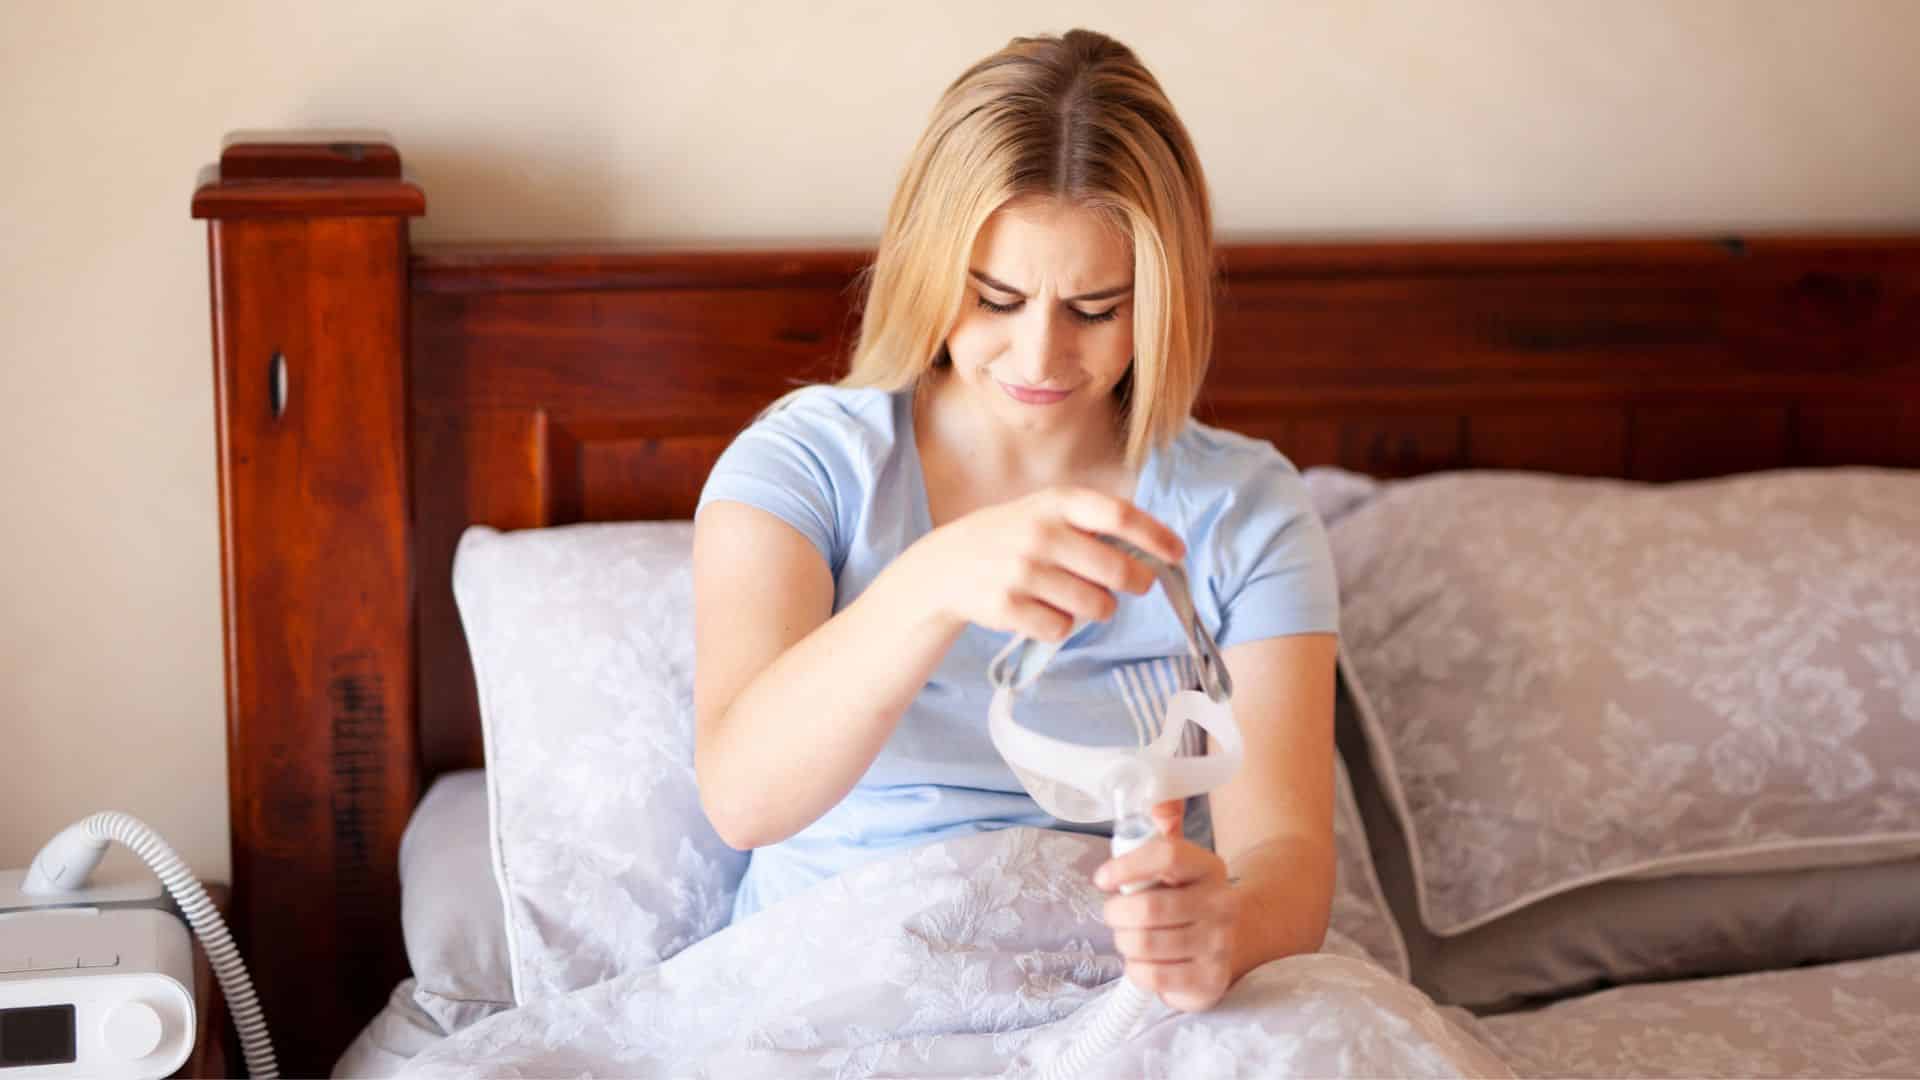 Cpap en invierno: cómo tolerarla cuando estamos resfriados - Terapiacpap  especialistas en apnea del sueño y trastornos respiratorios.